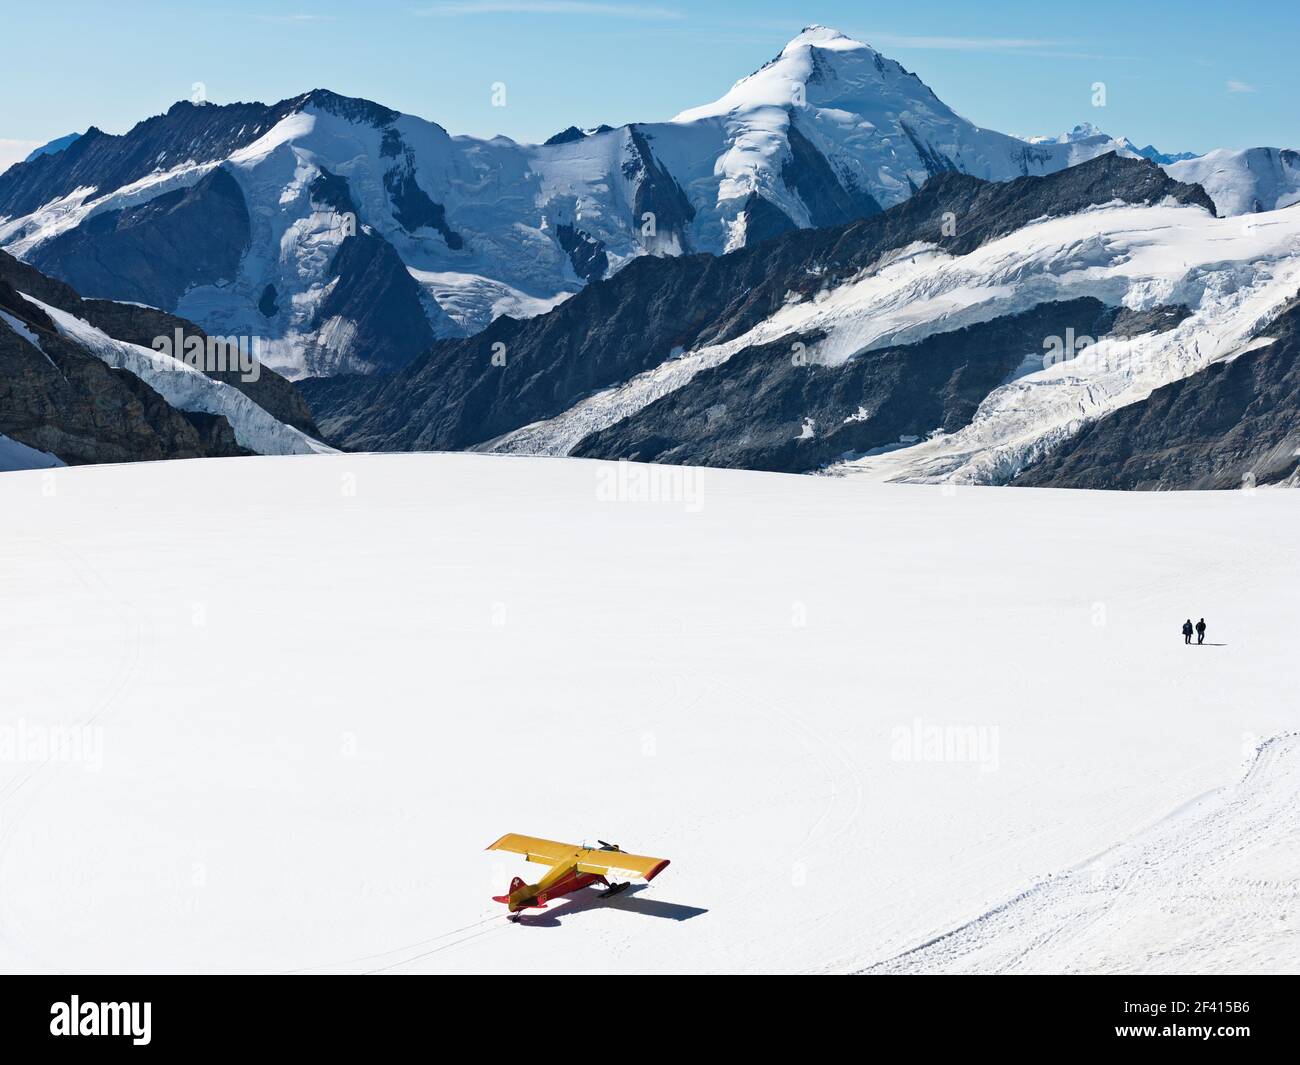 Schweiz Jungfraujoch-Top of Europe. Flugzeug auf Gletscher mit Bergen im Hintergrund und zwei Personen zu Fuß entfernt. Der Große Aletschgletscher. Stockfoto